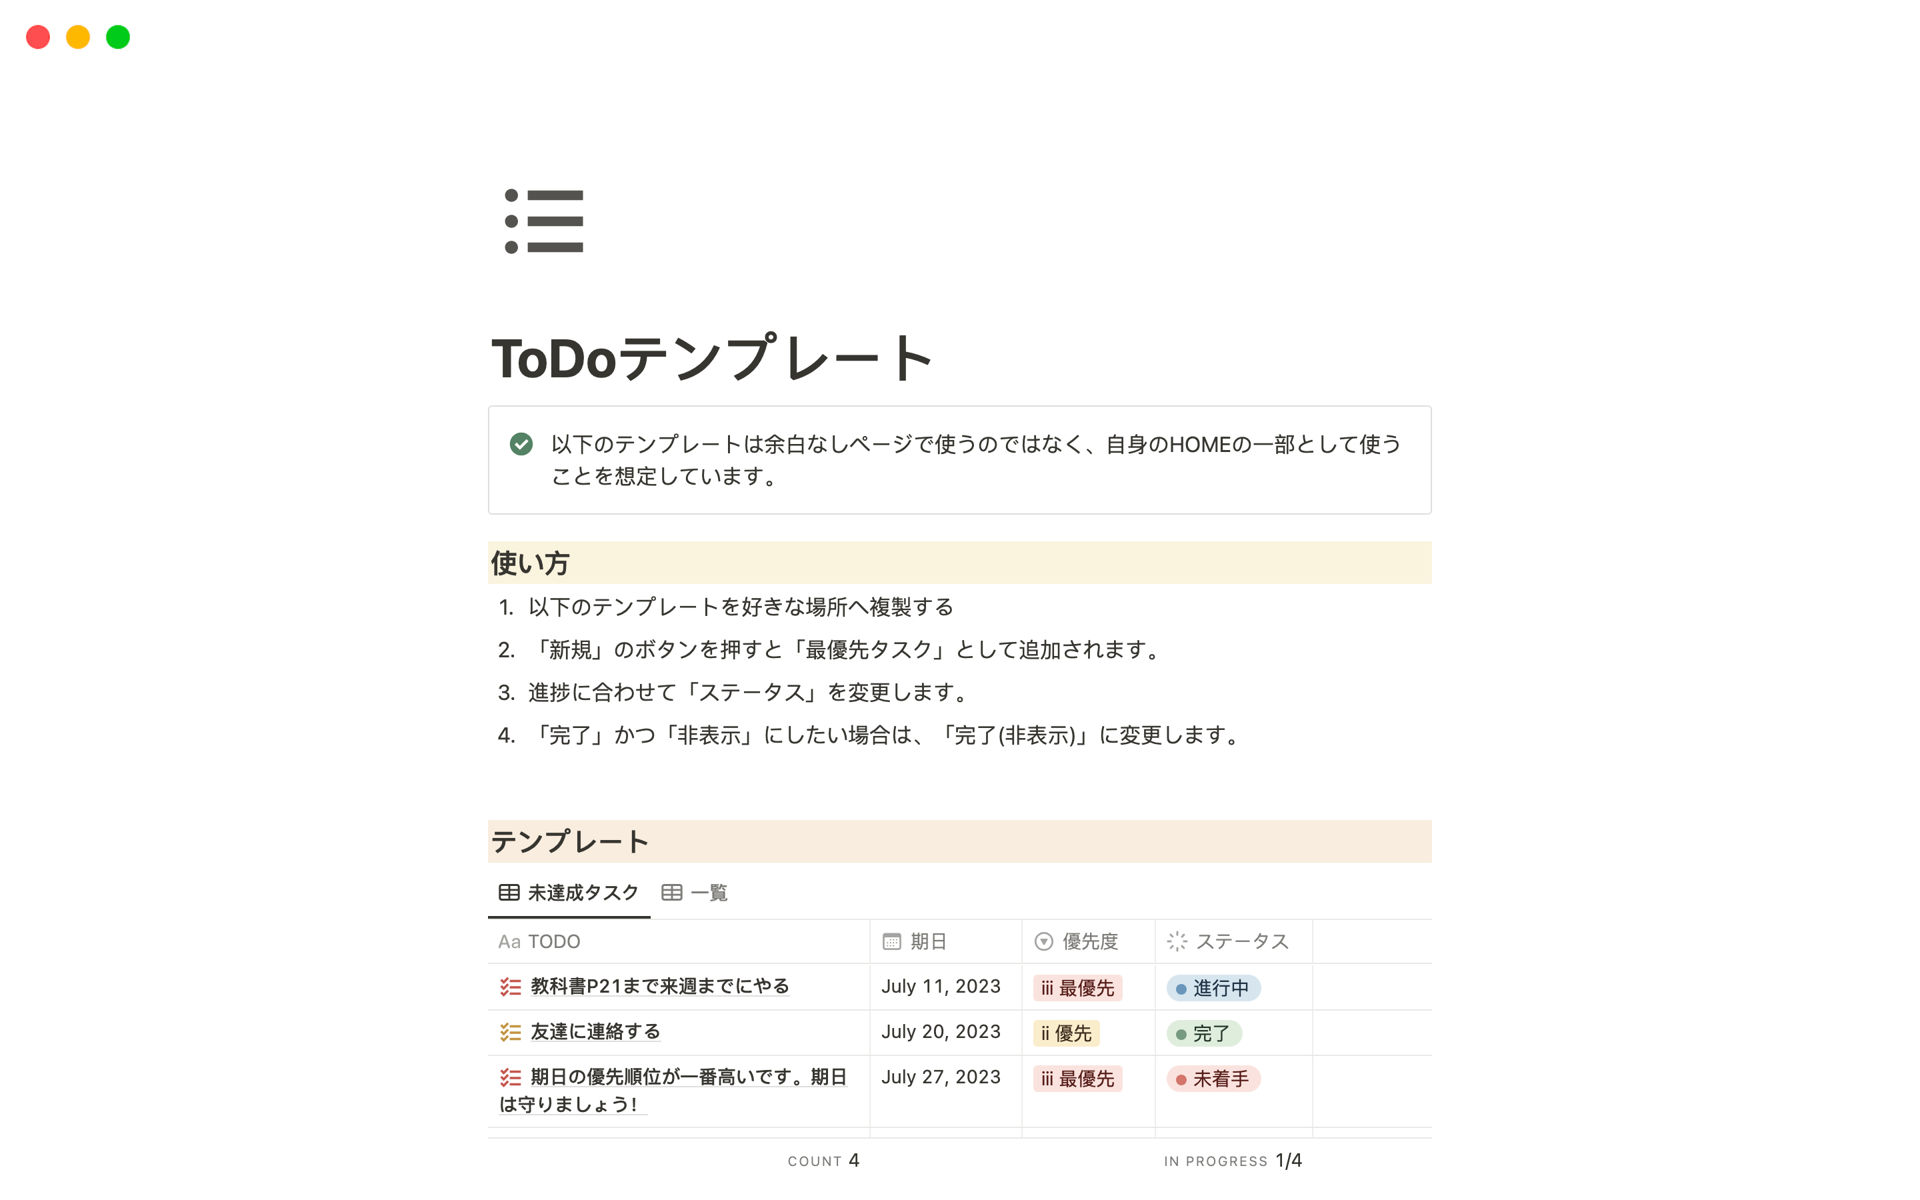 En förhandsgranskning av mallen för 個人用ToDoリスト